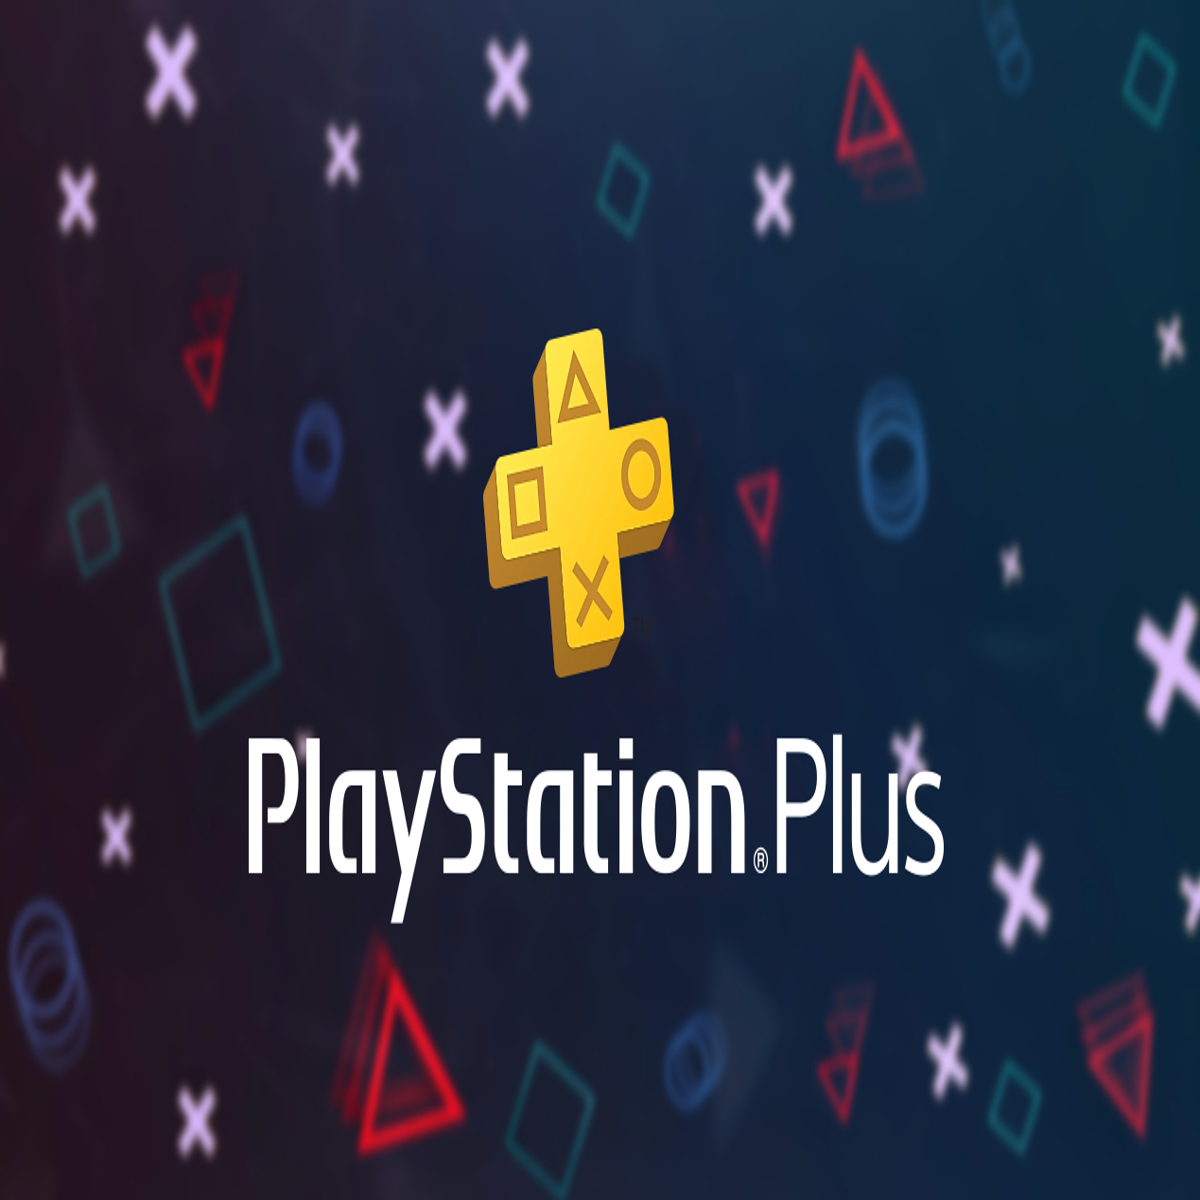 PlayStation Plus: Guia dos conteúdos dos 3 níveis